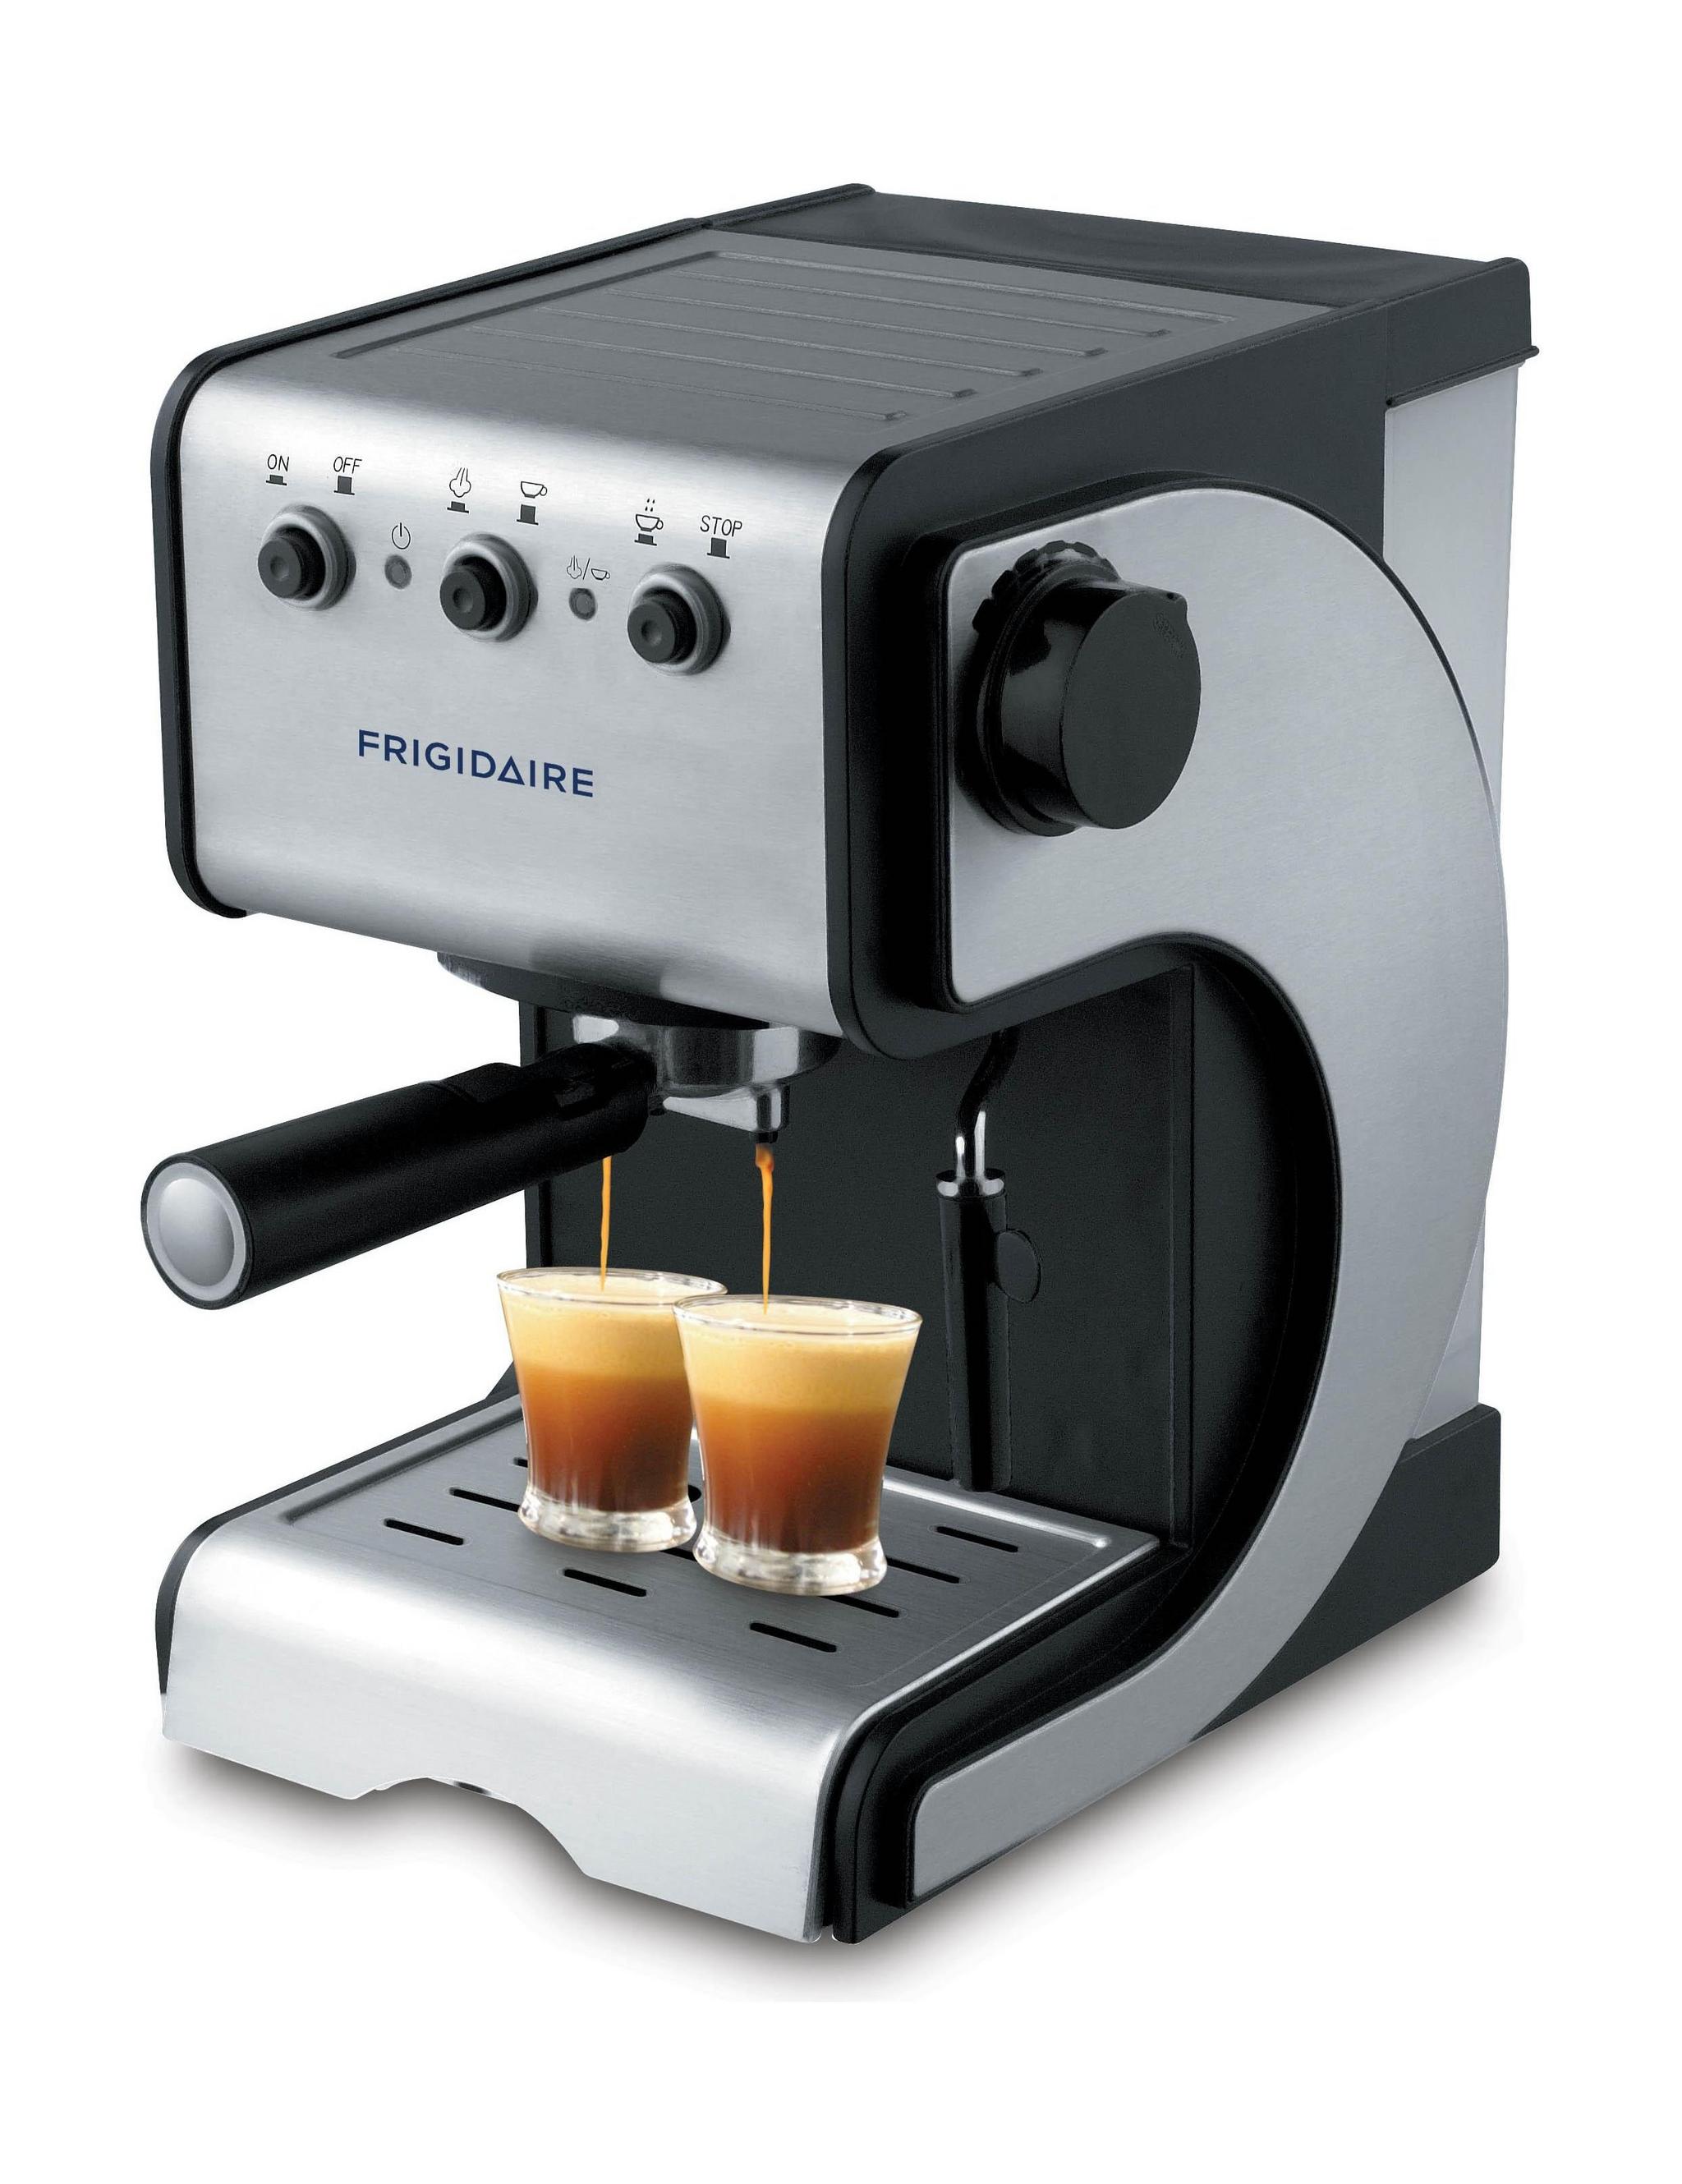 صانع قهوة الاسبريسو 1050 واط من فريجيدير - FD7189